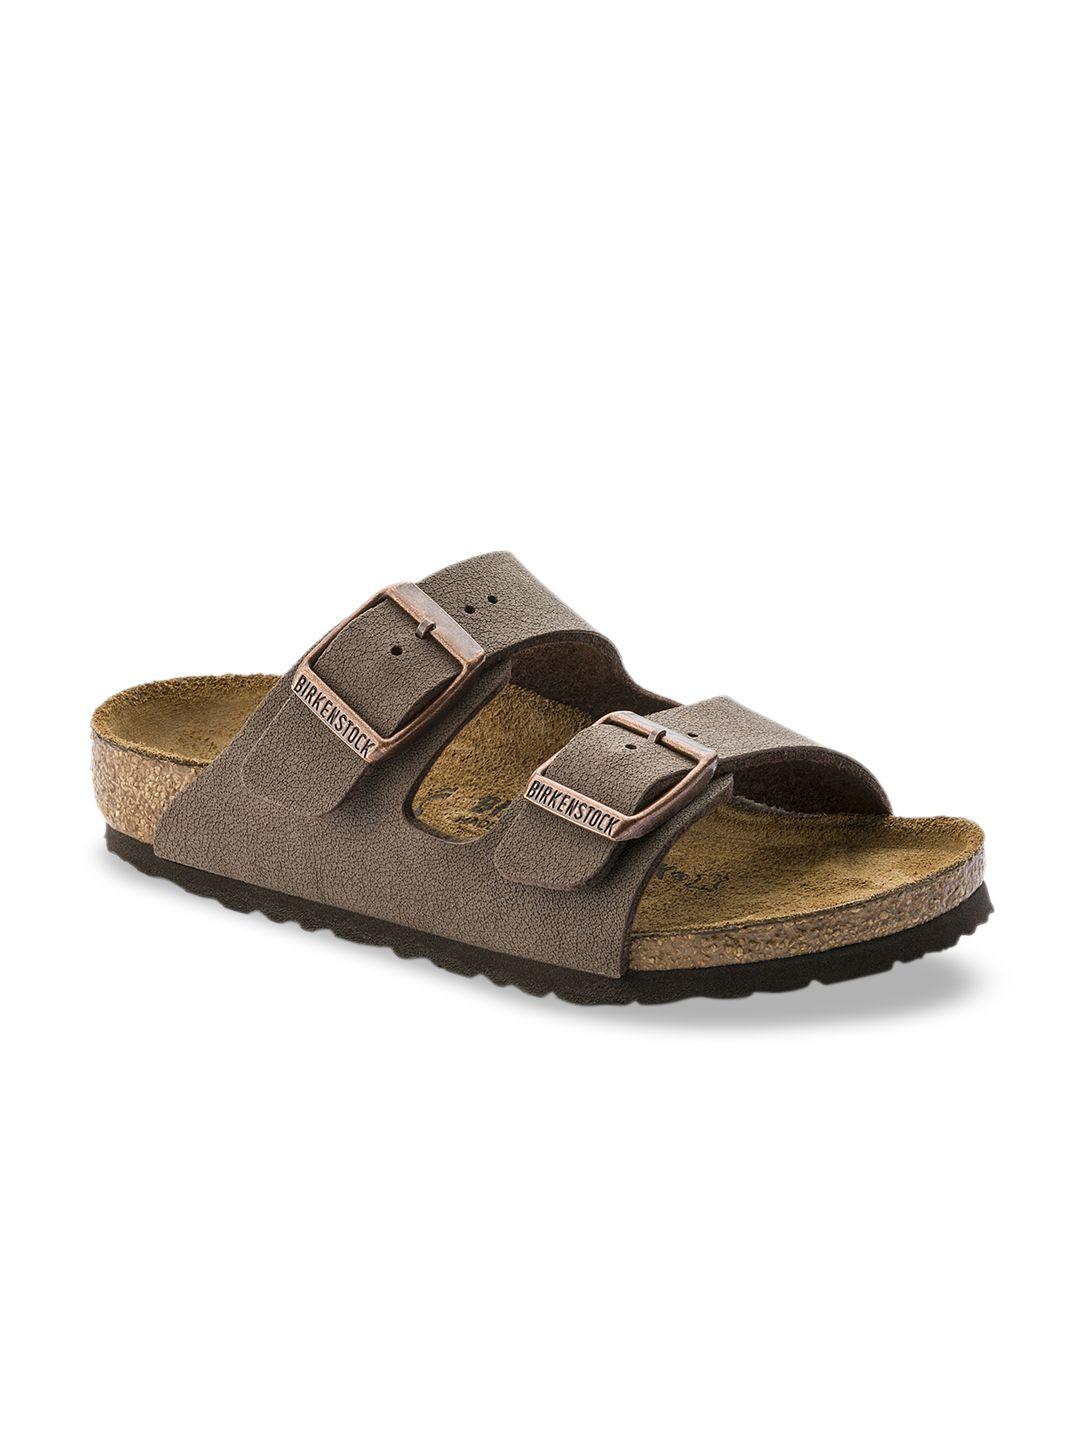 birkenstock boys brown arizona birko-flor nubuck comfort narrow width sandals